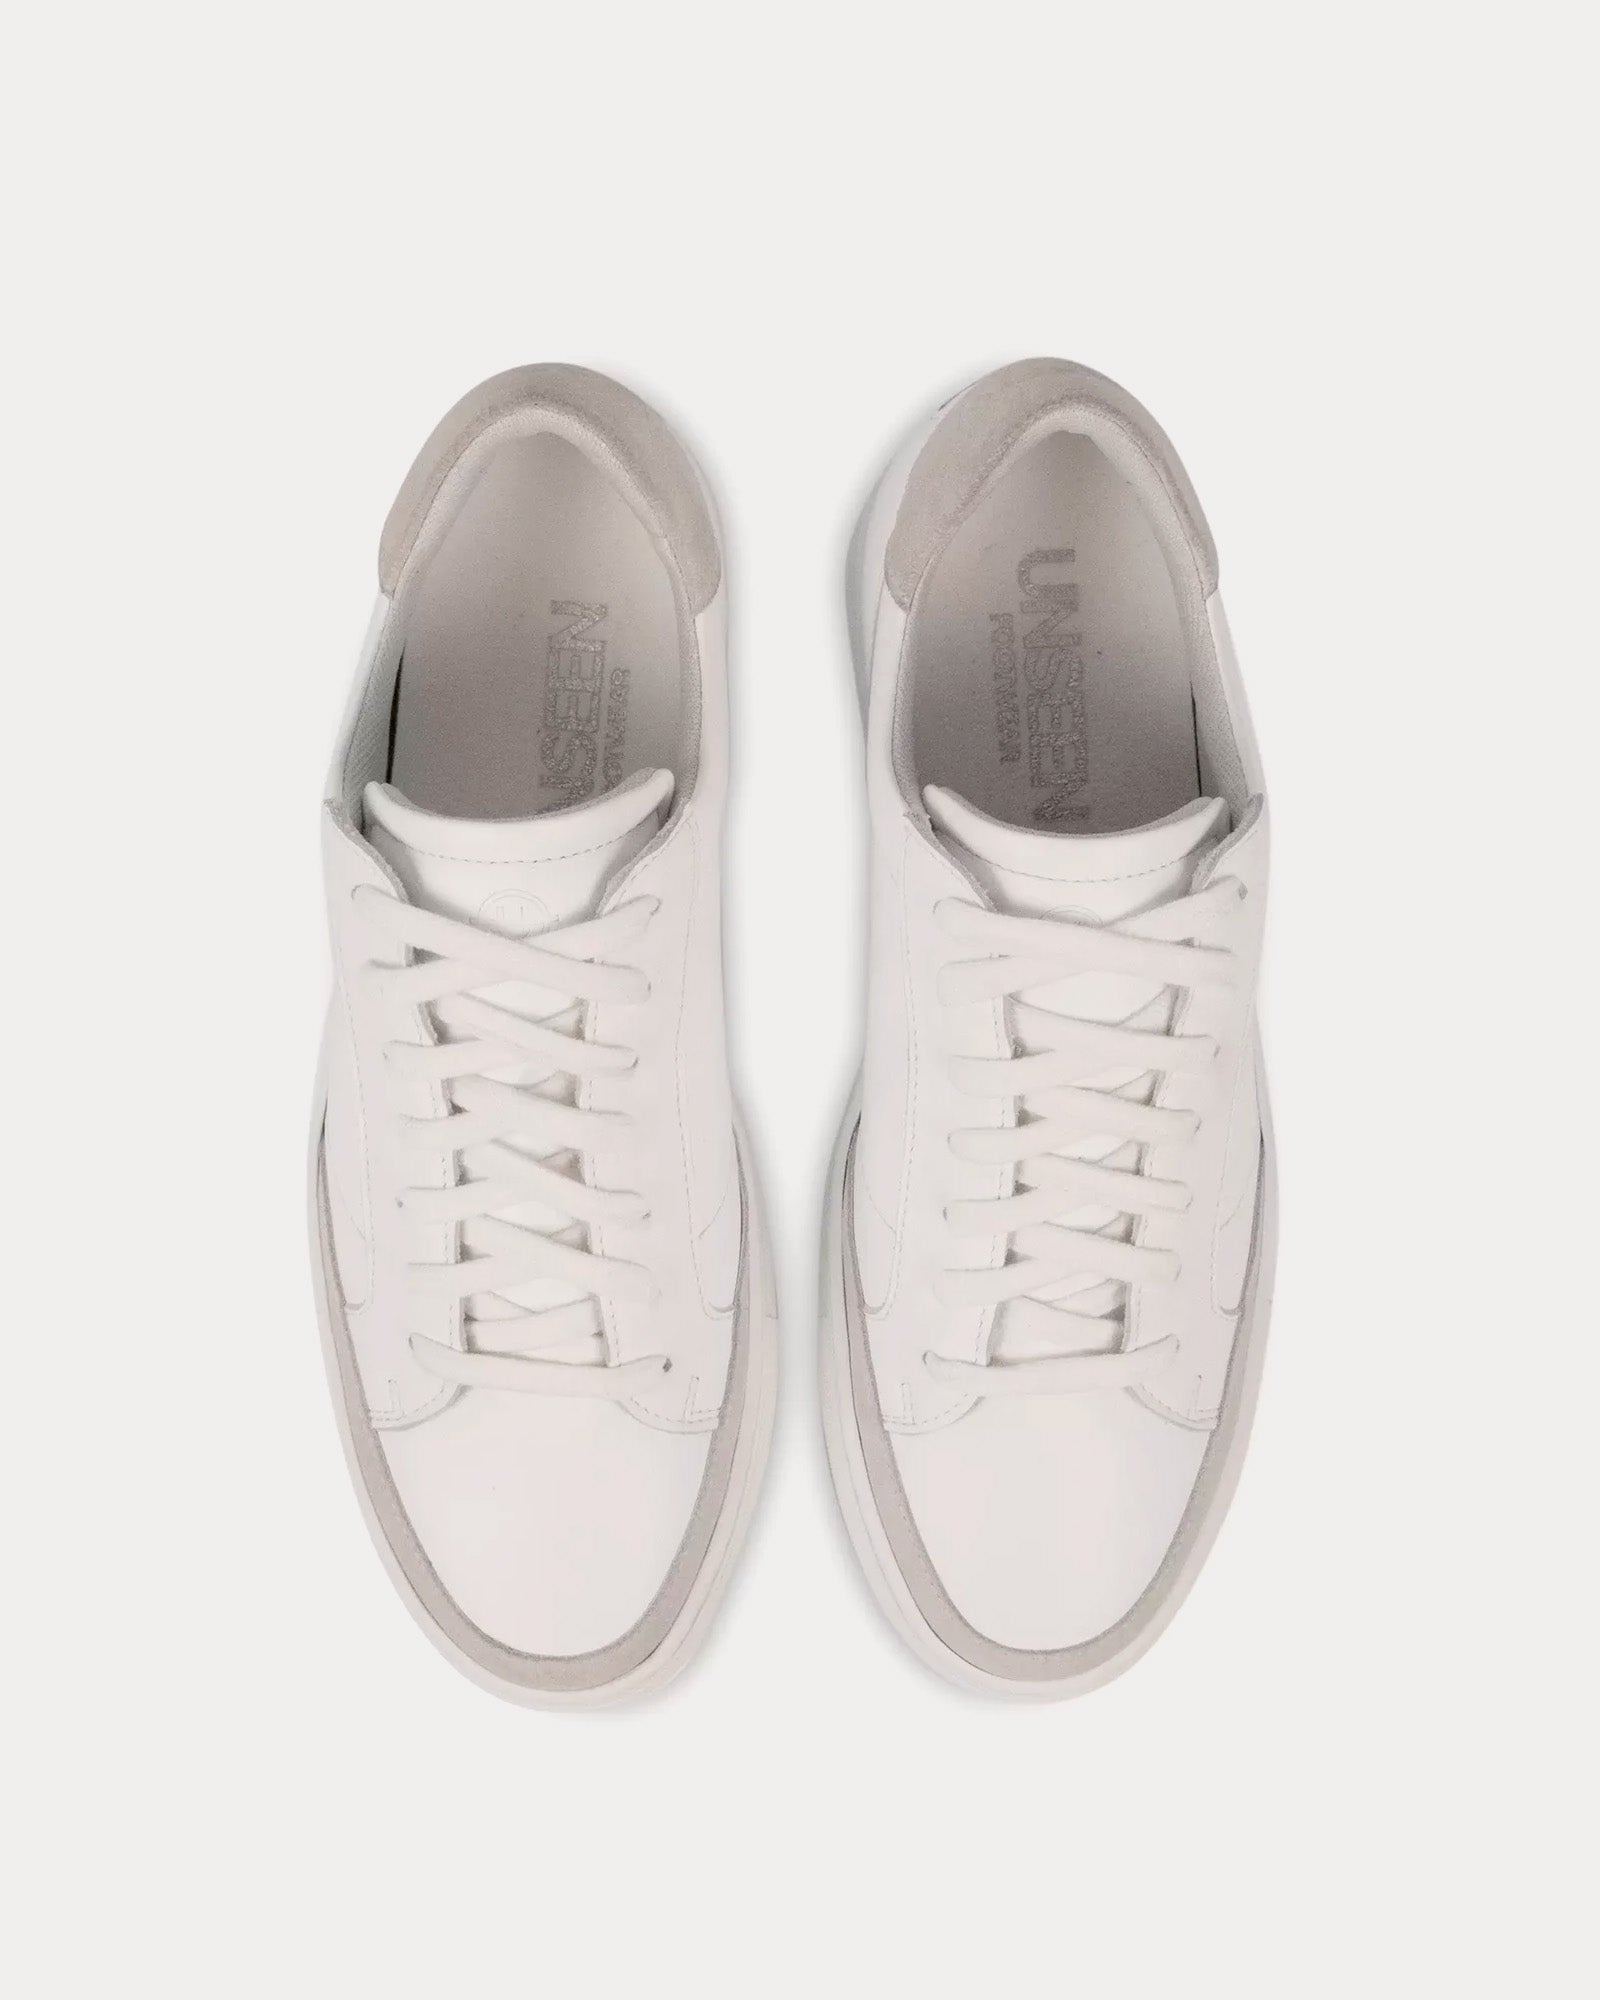 Unseen Footwear - Helier Leather & Suede White / Bone Low Top Sneakers